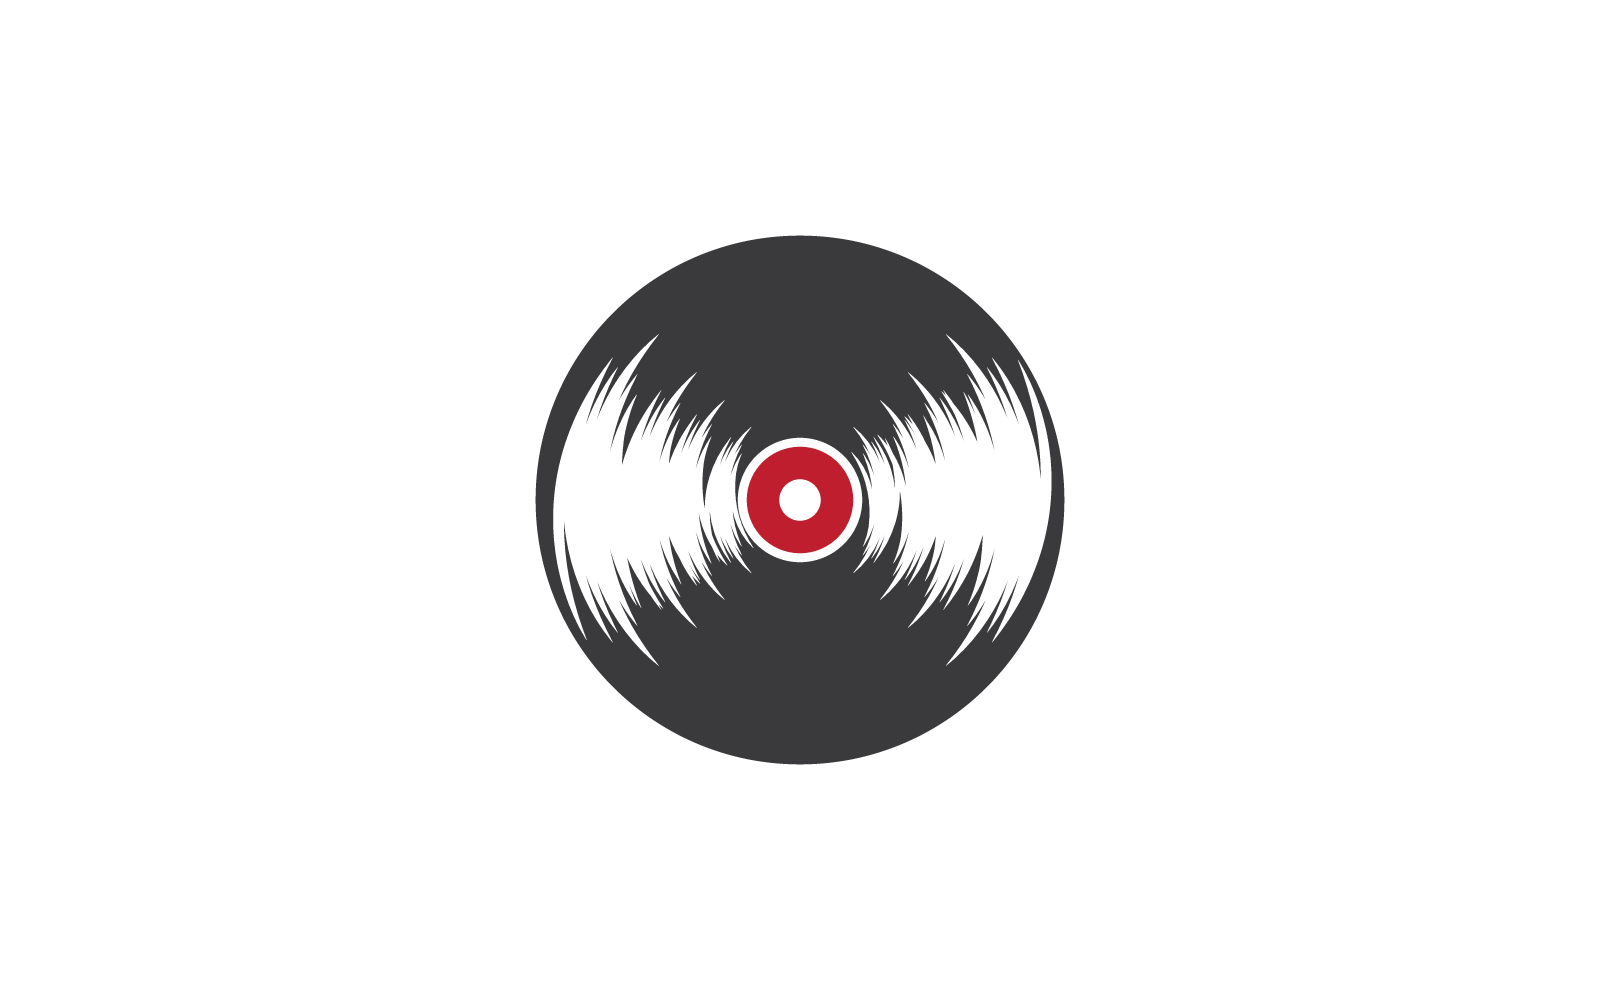 Flache Designvorlage für Vinyl-Musiksymbole